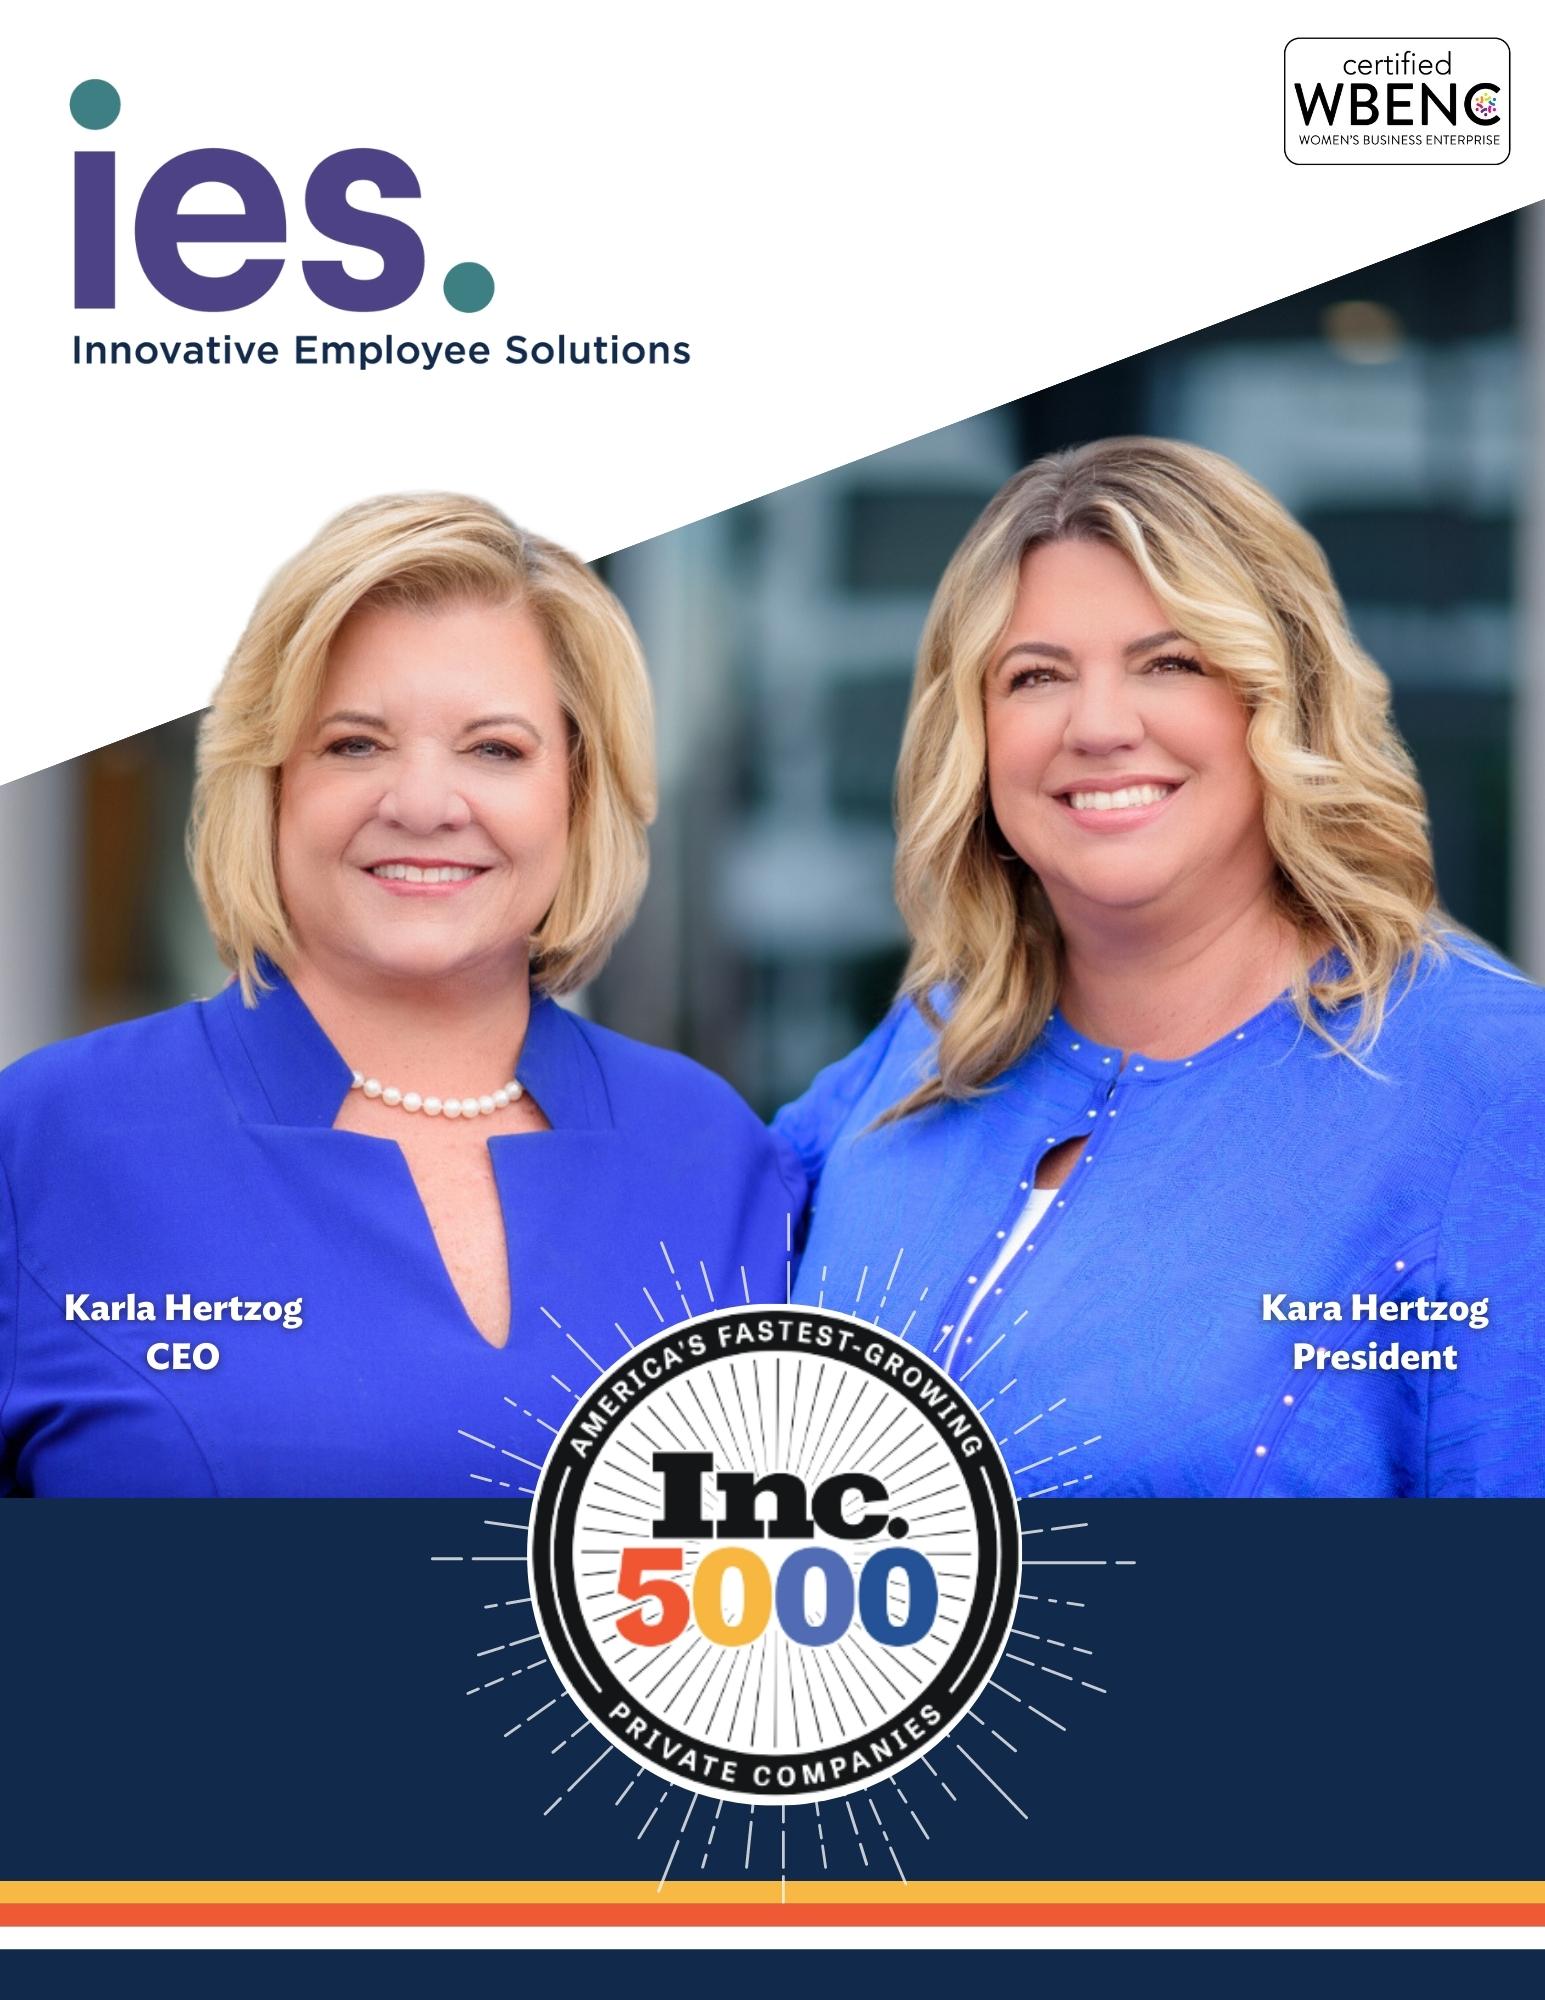 Kara and Karla Hertzog wearing blue tops smiling with Inc. 5000 logo